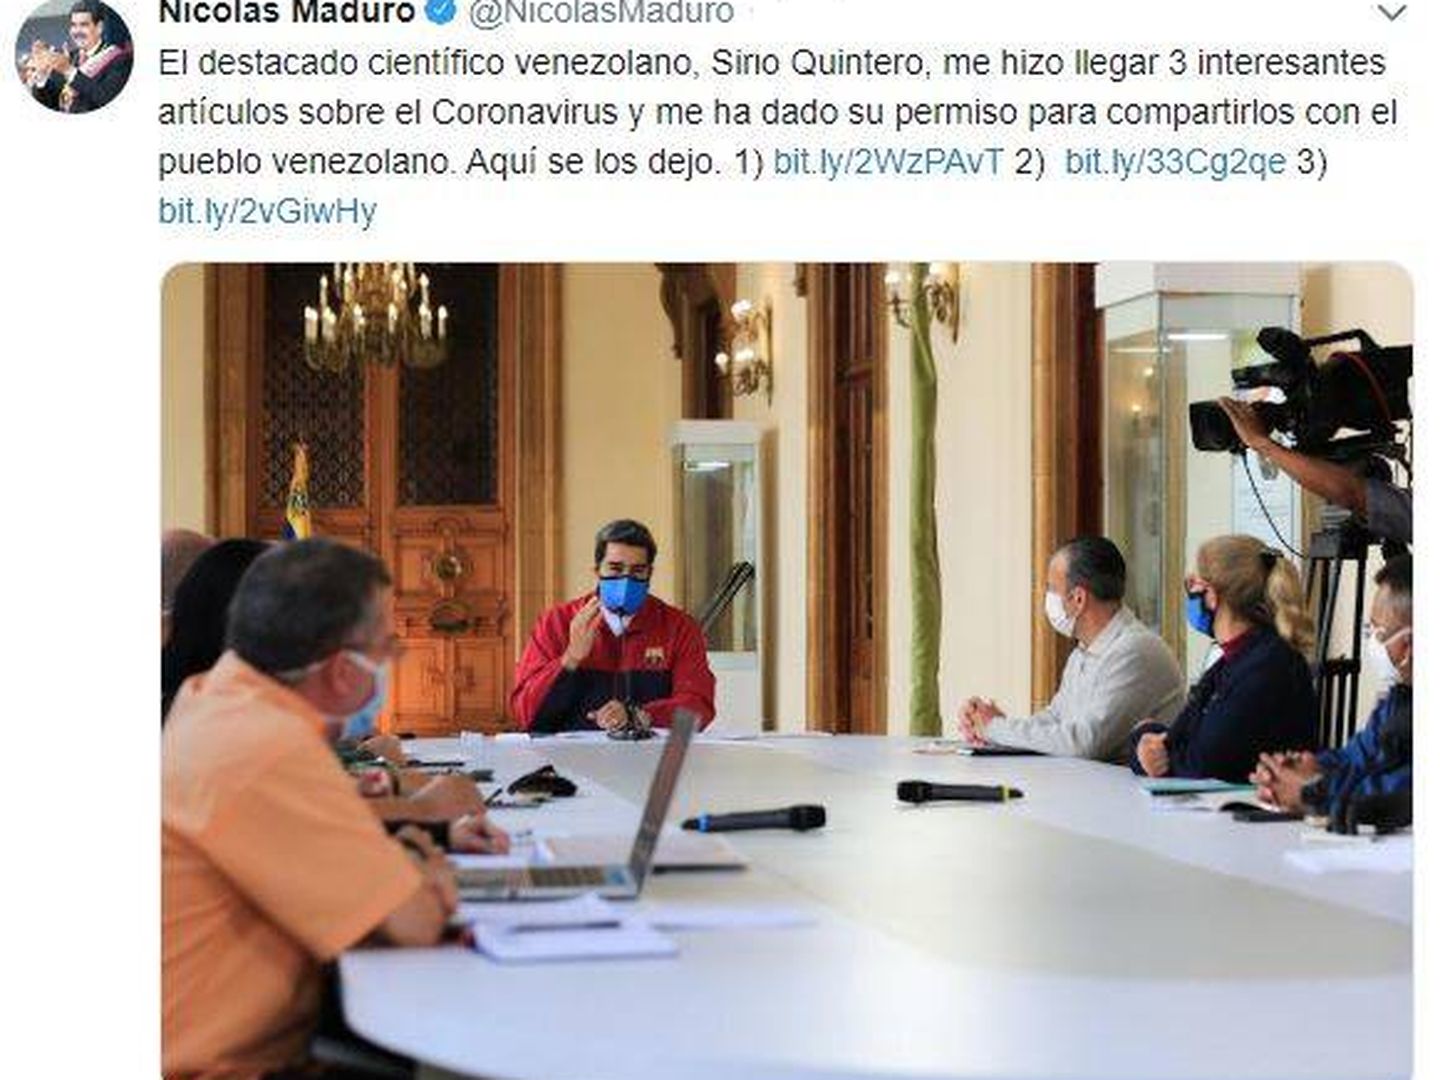 Tuit original del presidente venezolano, ya eliminado por la red social